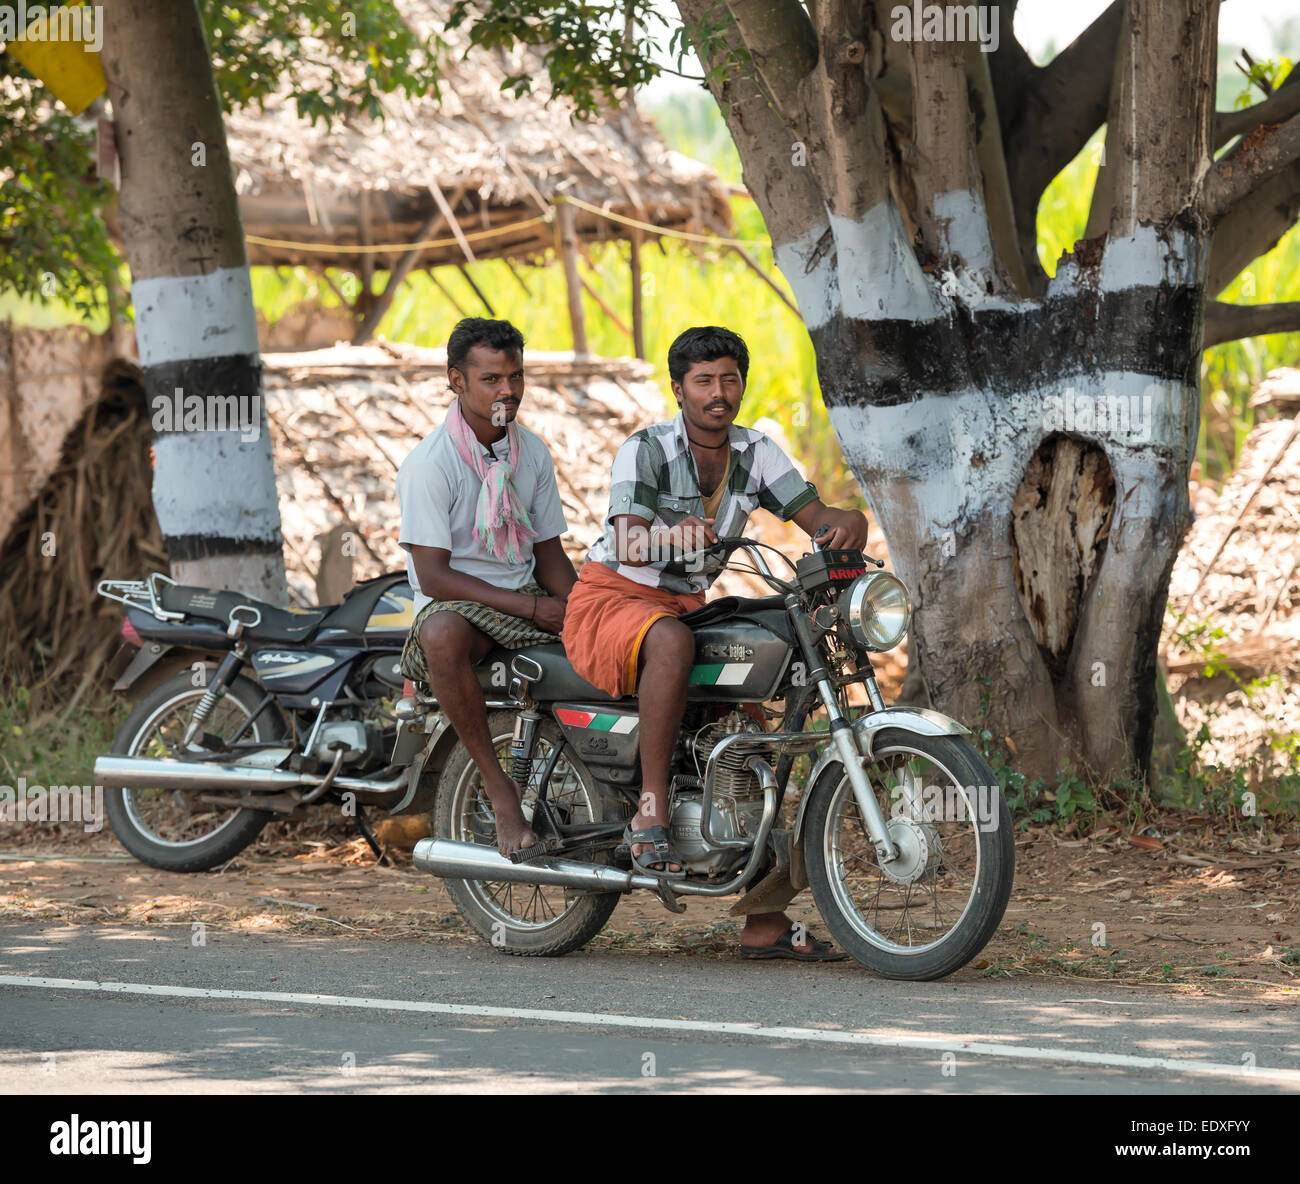 MADURAI, India - 17 febbraio: Un uomini non identificati sono seduti sulla bici su strada. India, nello Stato del Tamil Nadu, nei pressi di Madurai. Febr Foto Stock